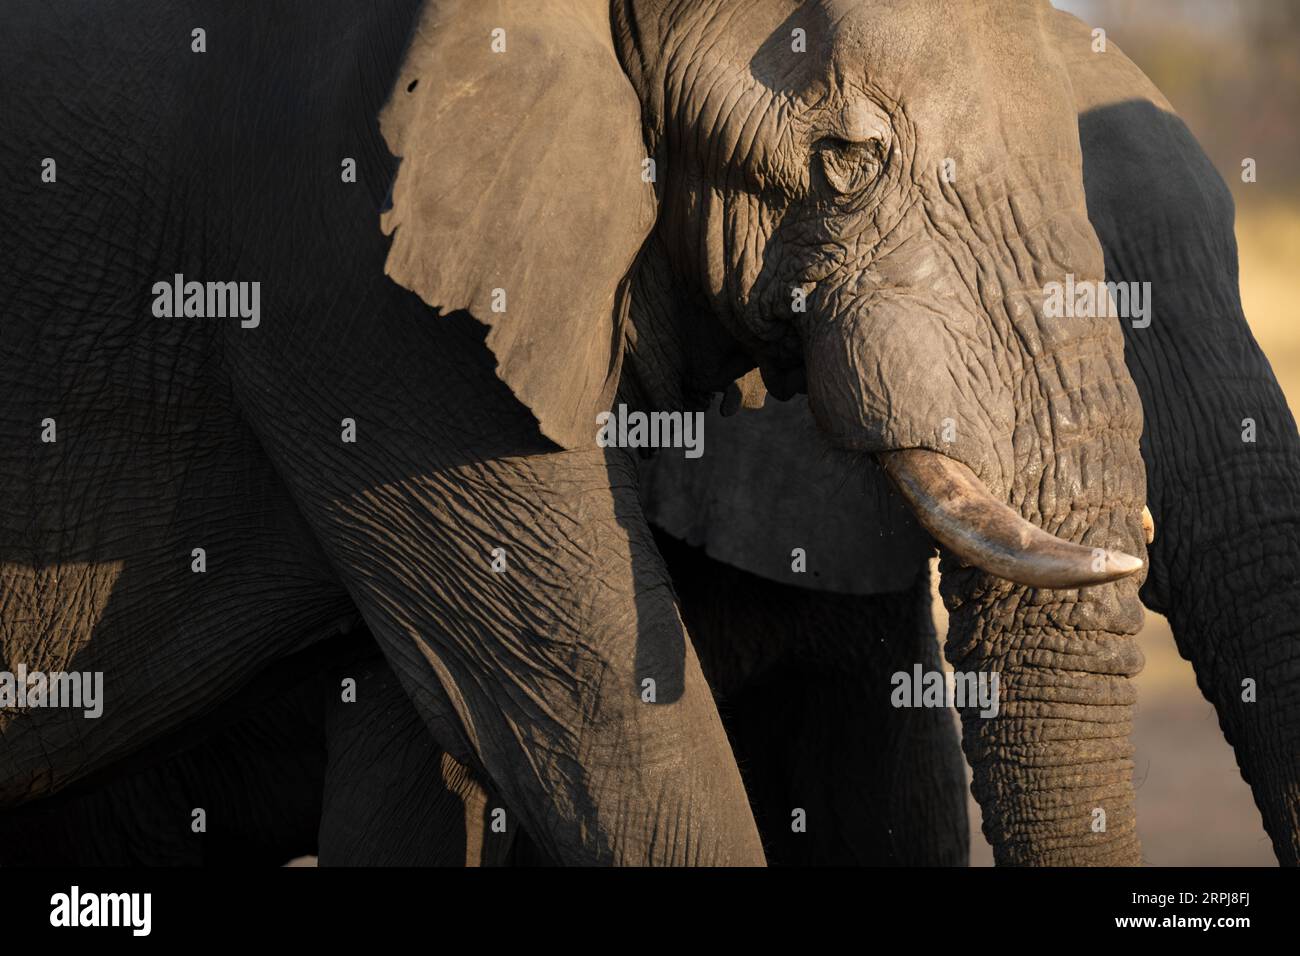 Eine Nahaufnahme eines großen afrikanischen Elefantenbullen bei schönem Nachmittagslicht. Das Nachmittagslicht erzeugt einen Kontrast auf der rauen und harten Haut der Elefanten Stockfoto